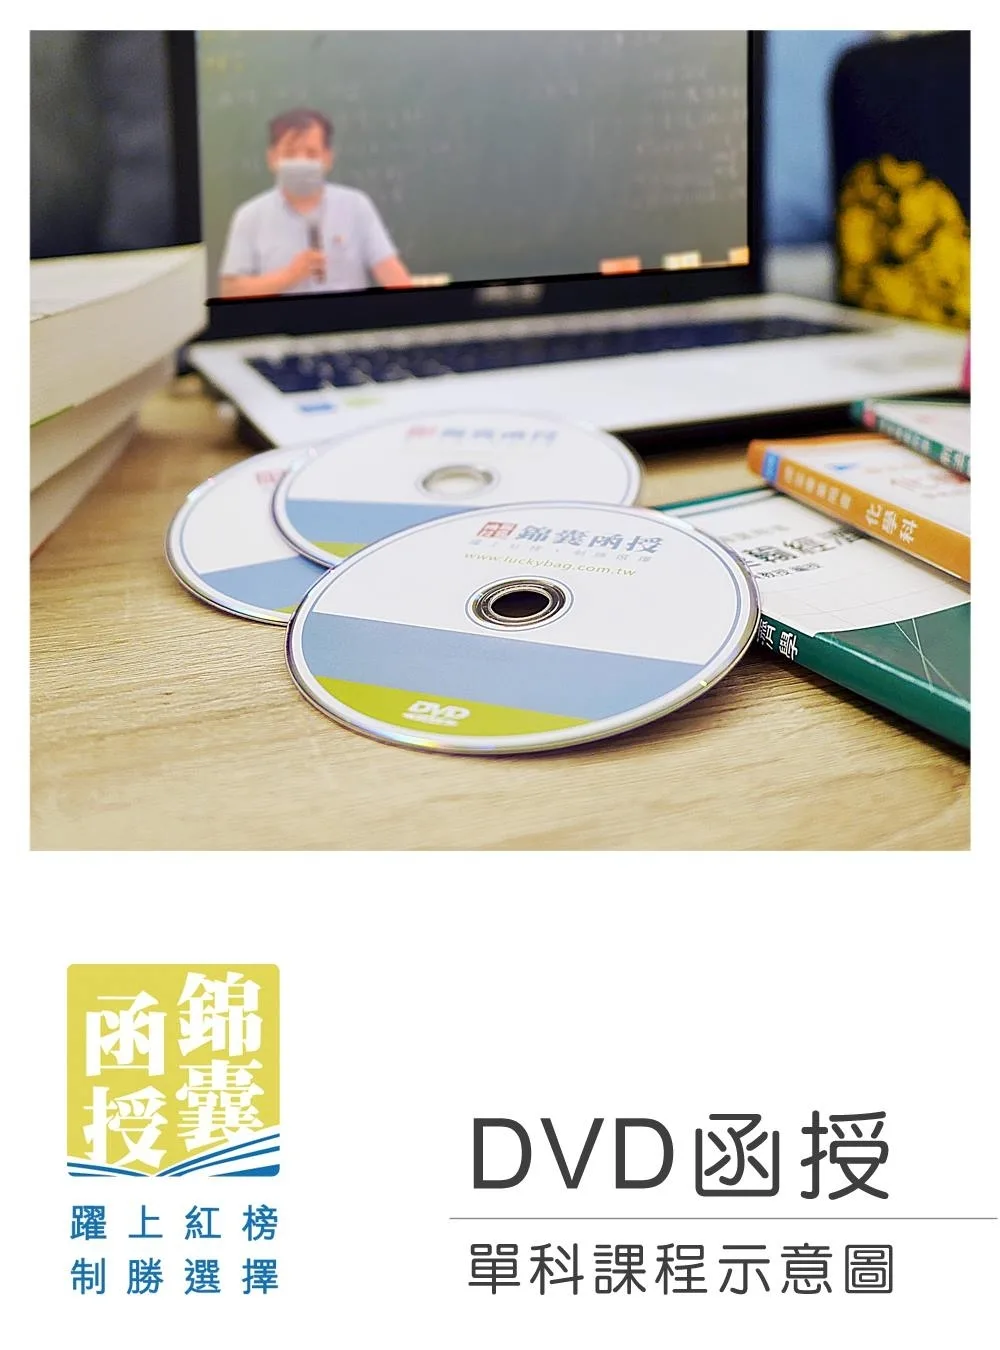 【DVD函授】洗錢防制法-單科課程(111版)